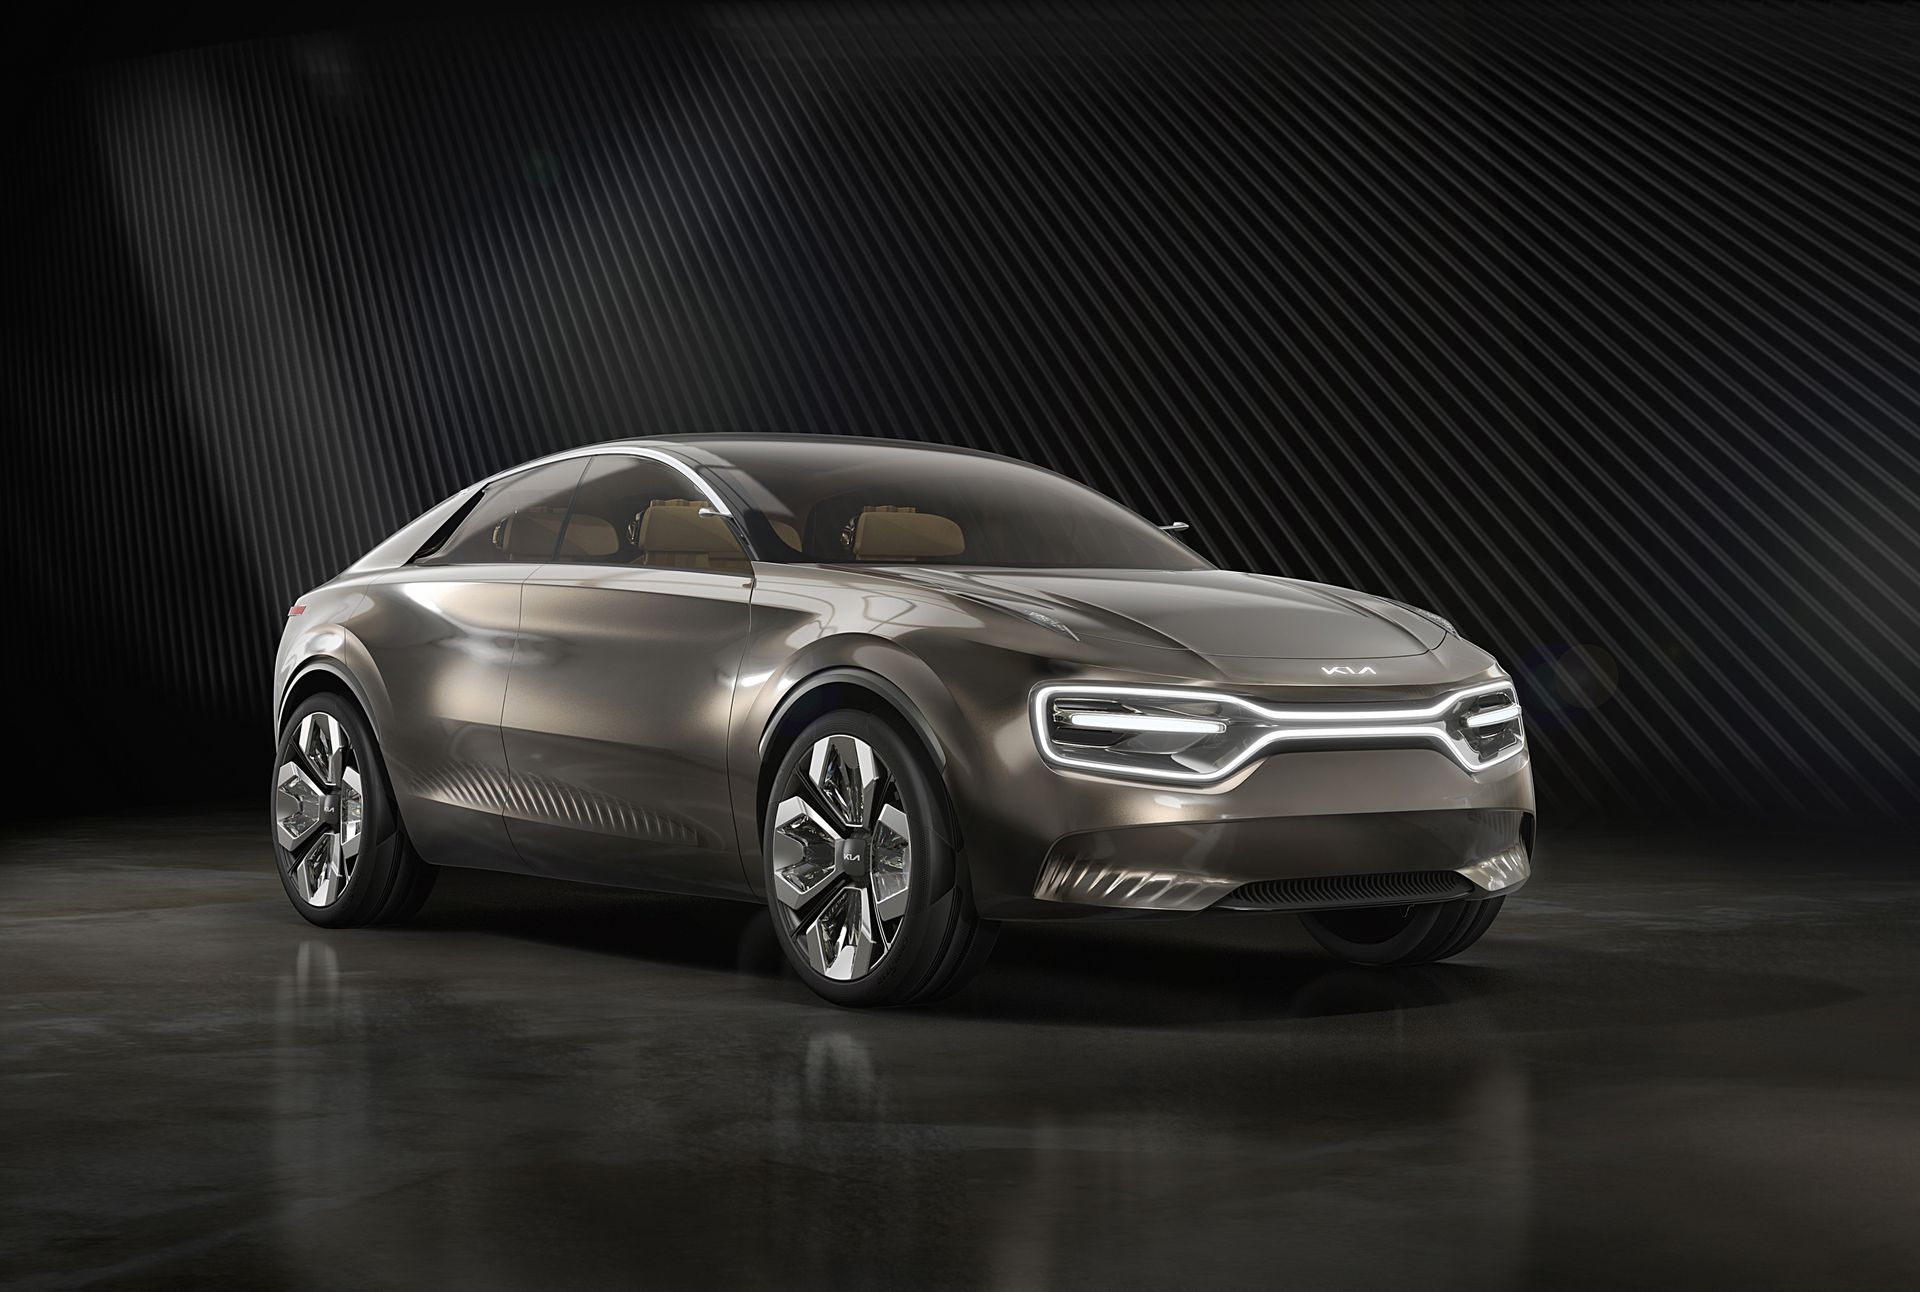 Kia Unveils Imagine Concept at Geneva 1